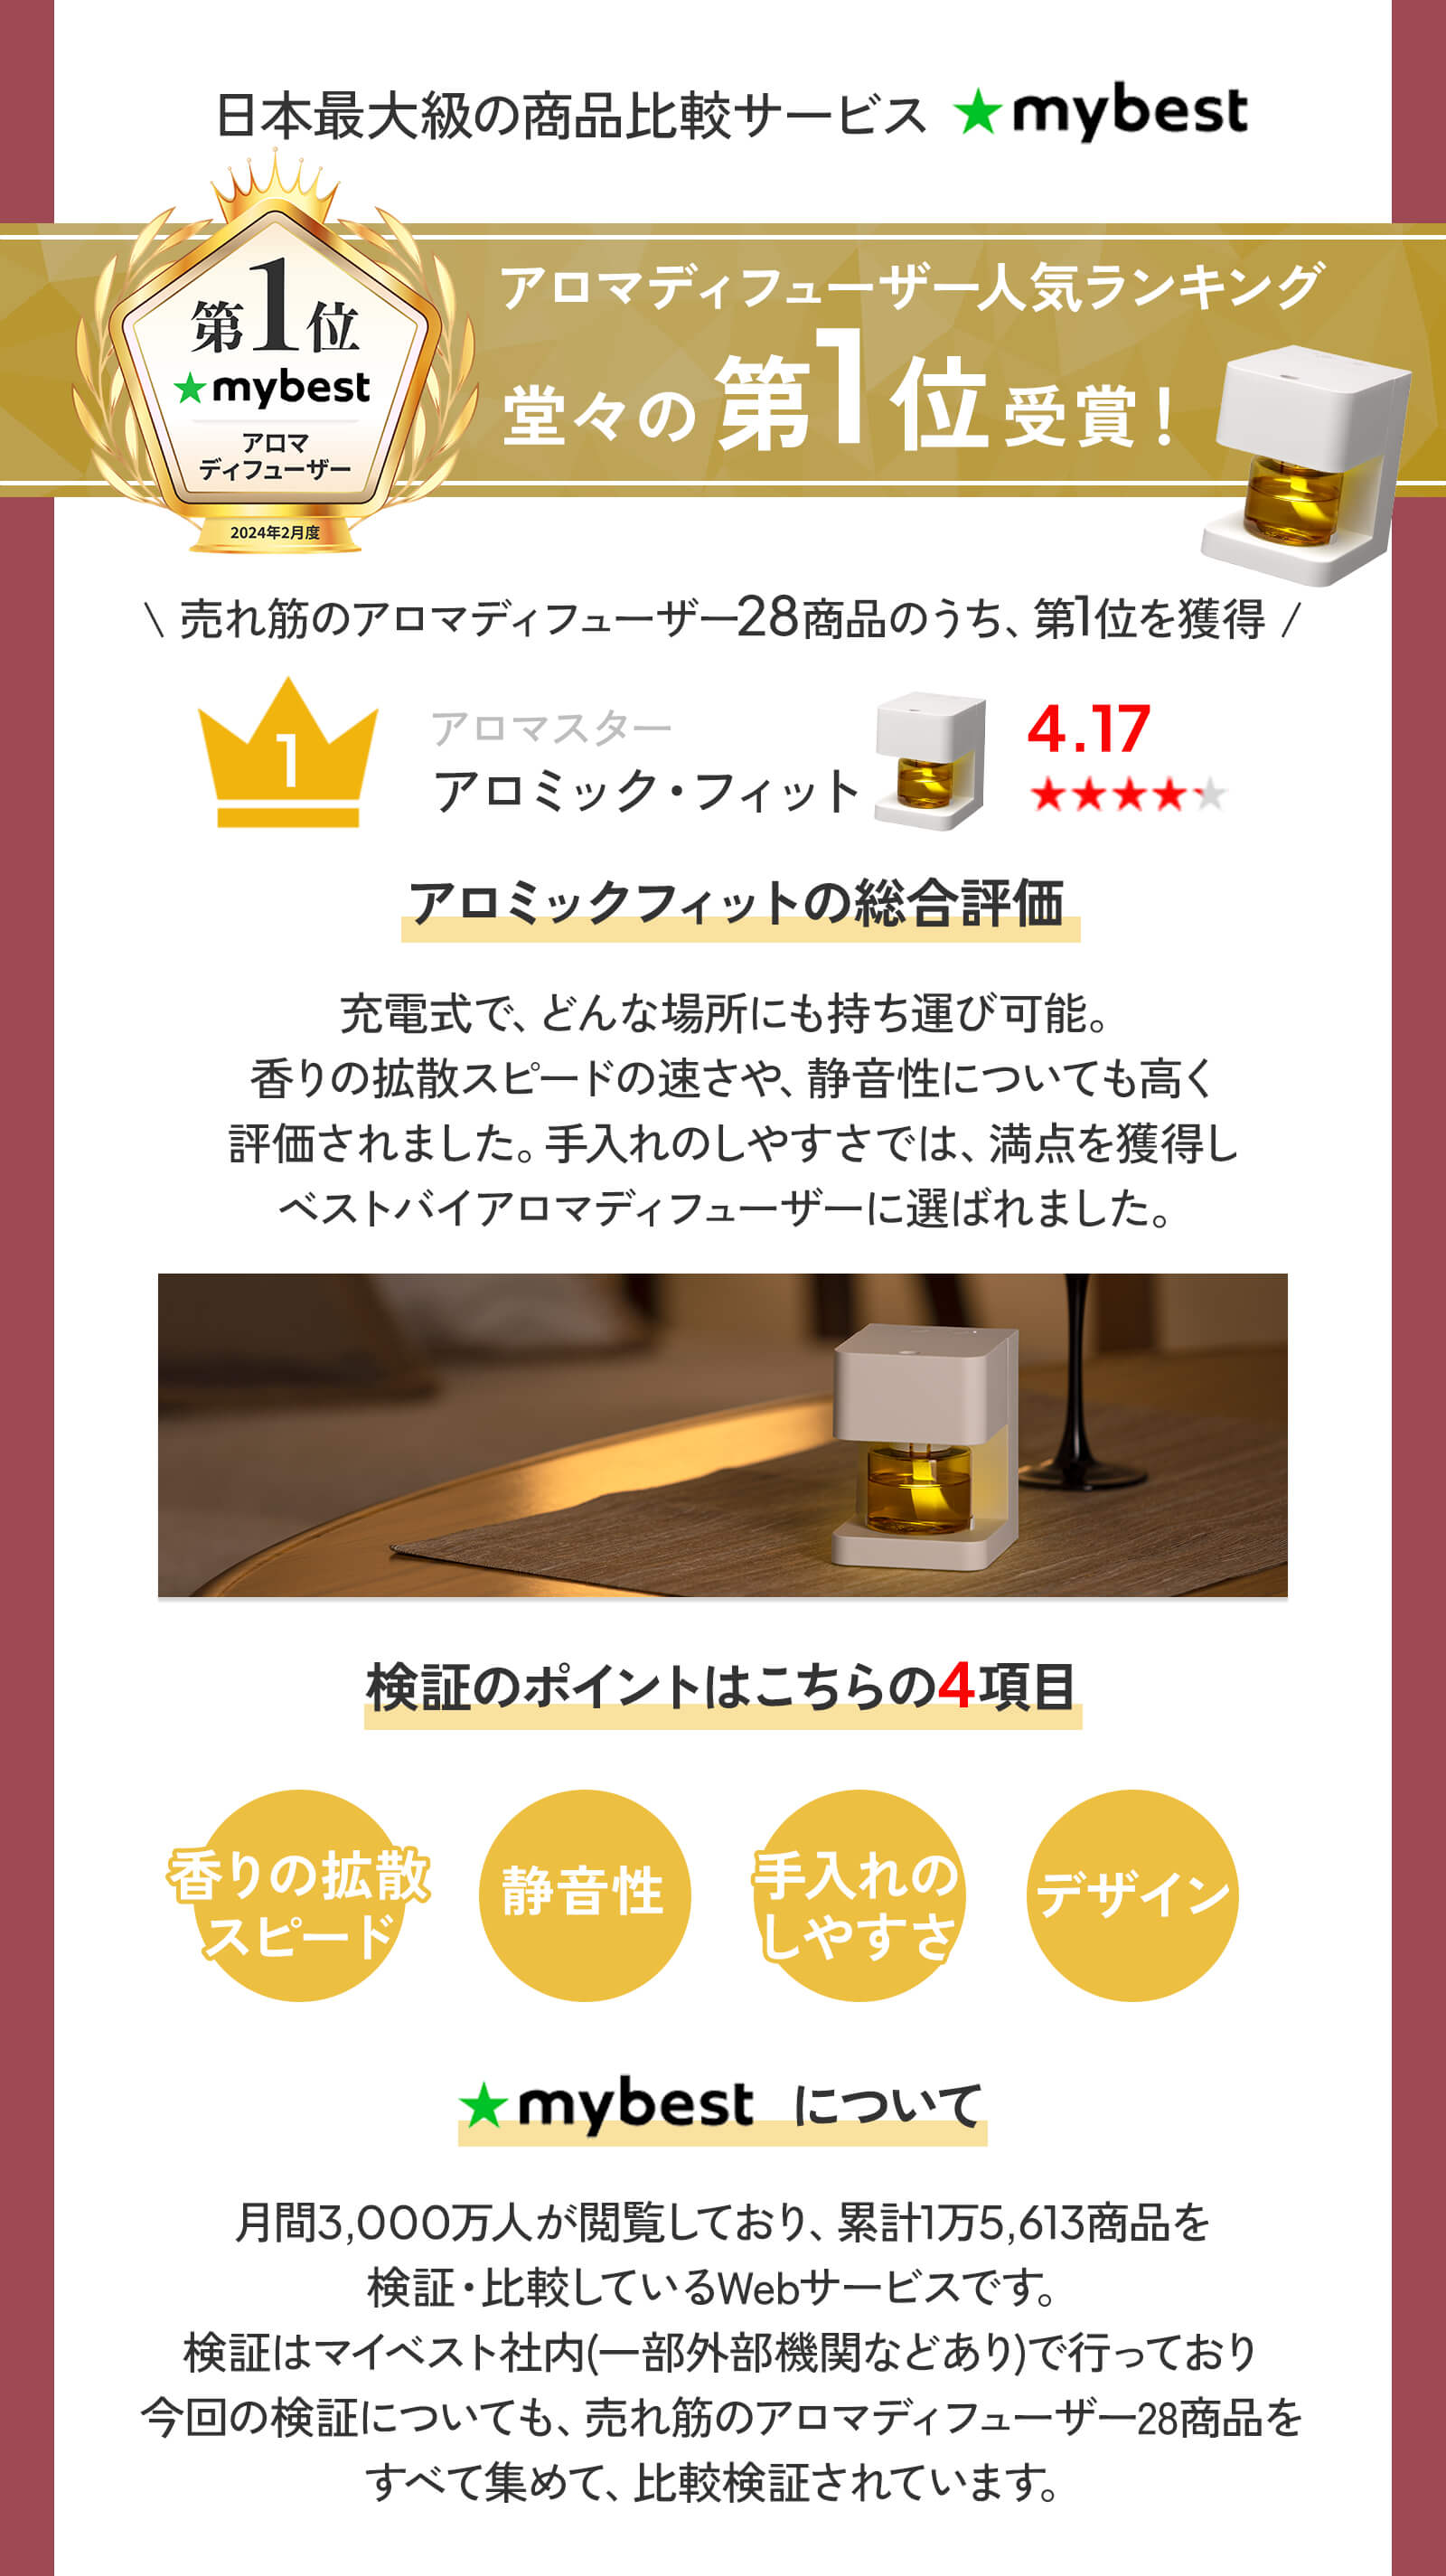 日本最大級の商品比較サービスmybestアロマディフーザー人気ランキング堂々の第1位受賞！売れ筋のアロマディフューザー28商品のうち、第1位を獲得ベストバイアロマディフューザーに選ばれました